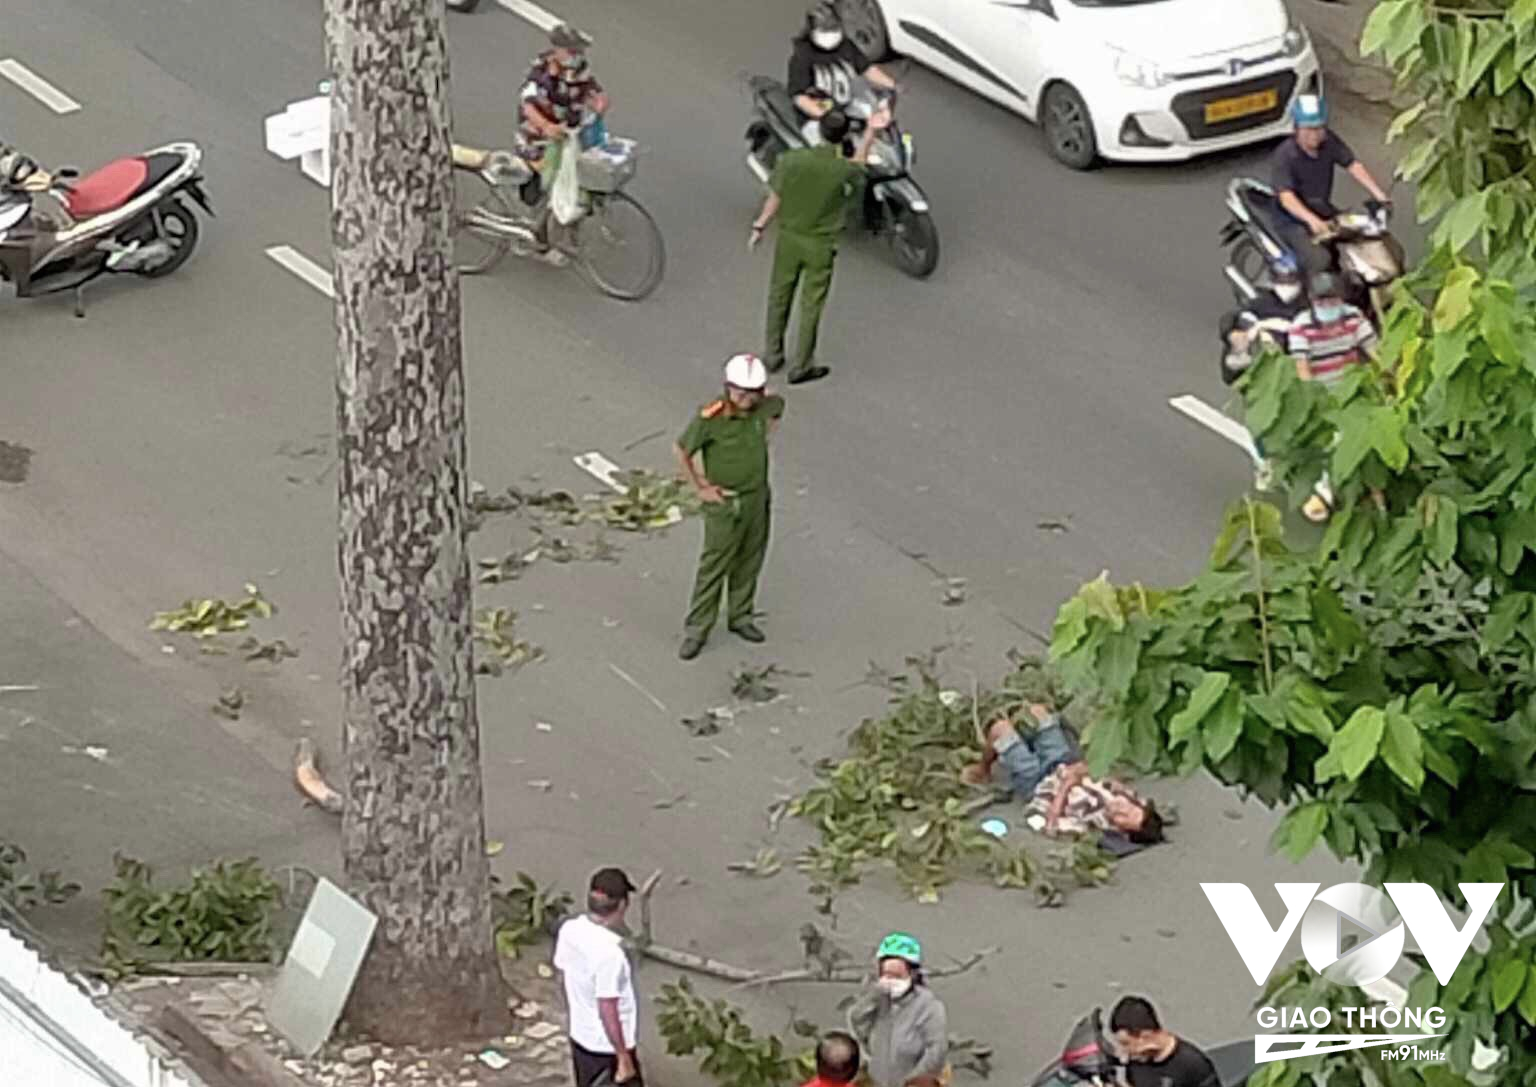 Đang chạy xe máy trên đường, người đàn ông bất ngờ bị nhánh cây xanh trên cao rơi xuống, trúng vào người khiến nạn nhân bị thương hôm 28/7